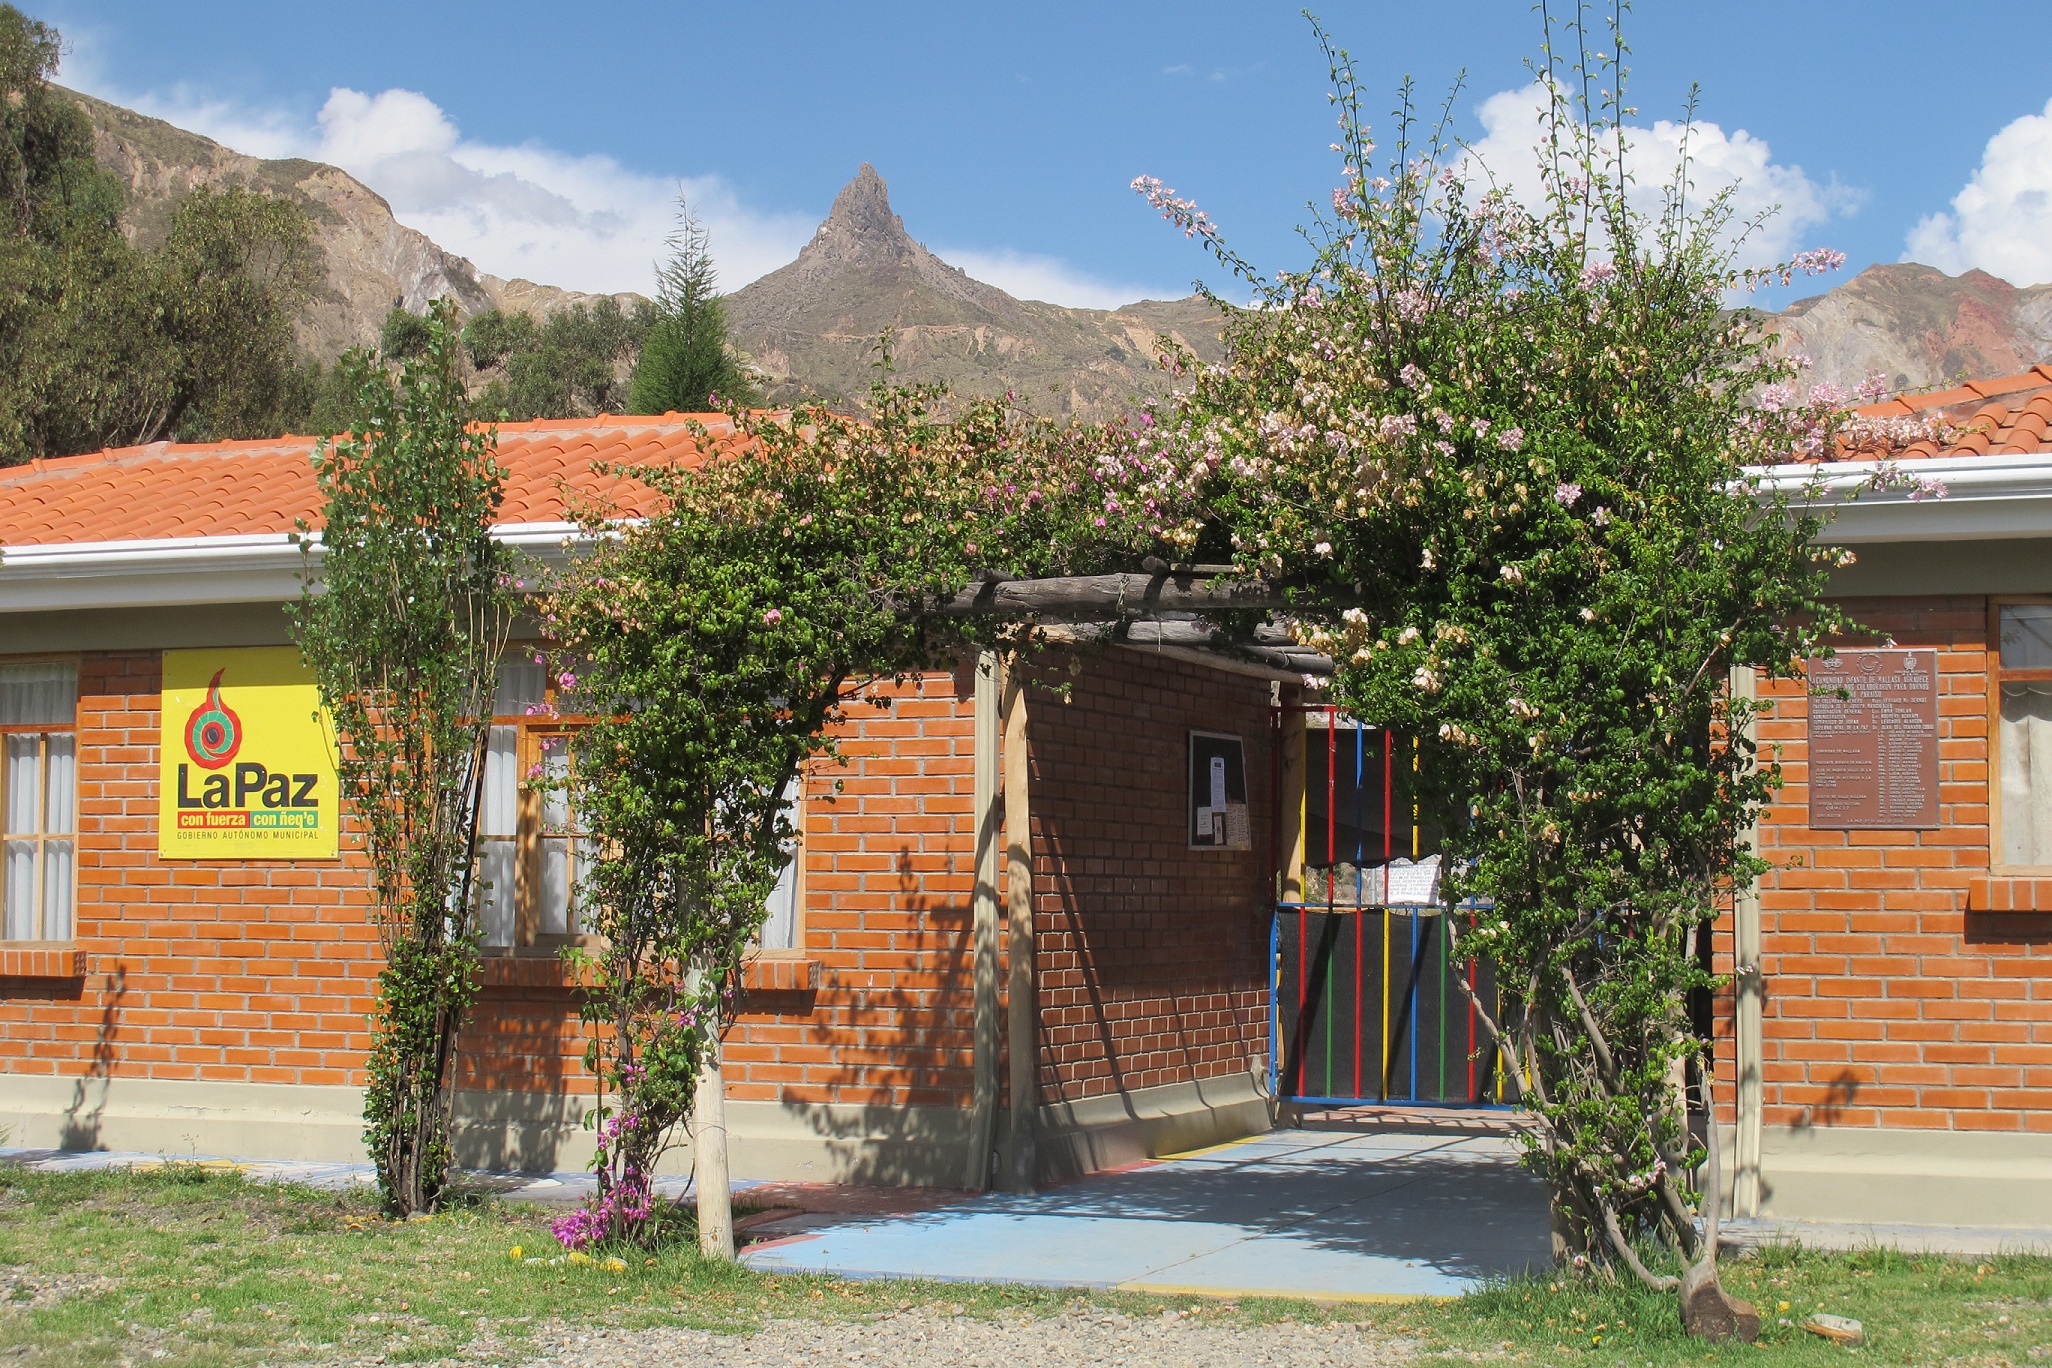 Valle de la Luna Children's Centre